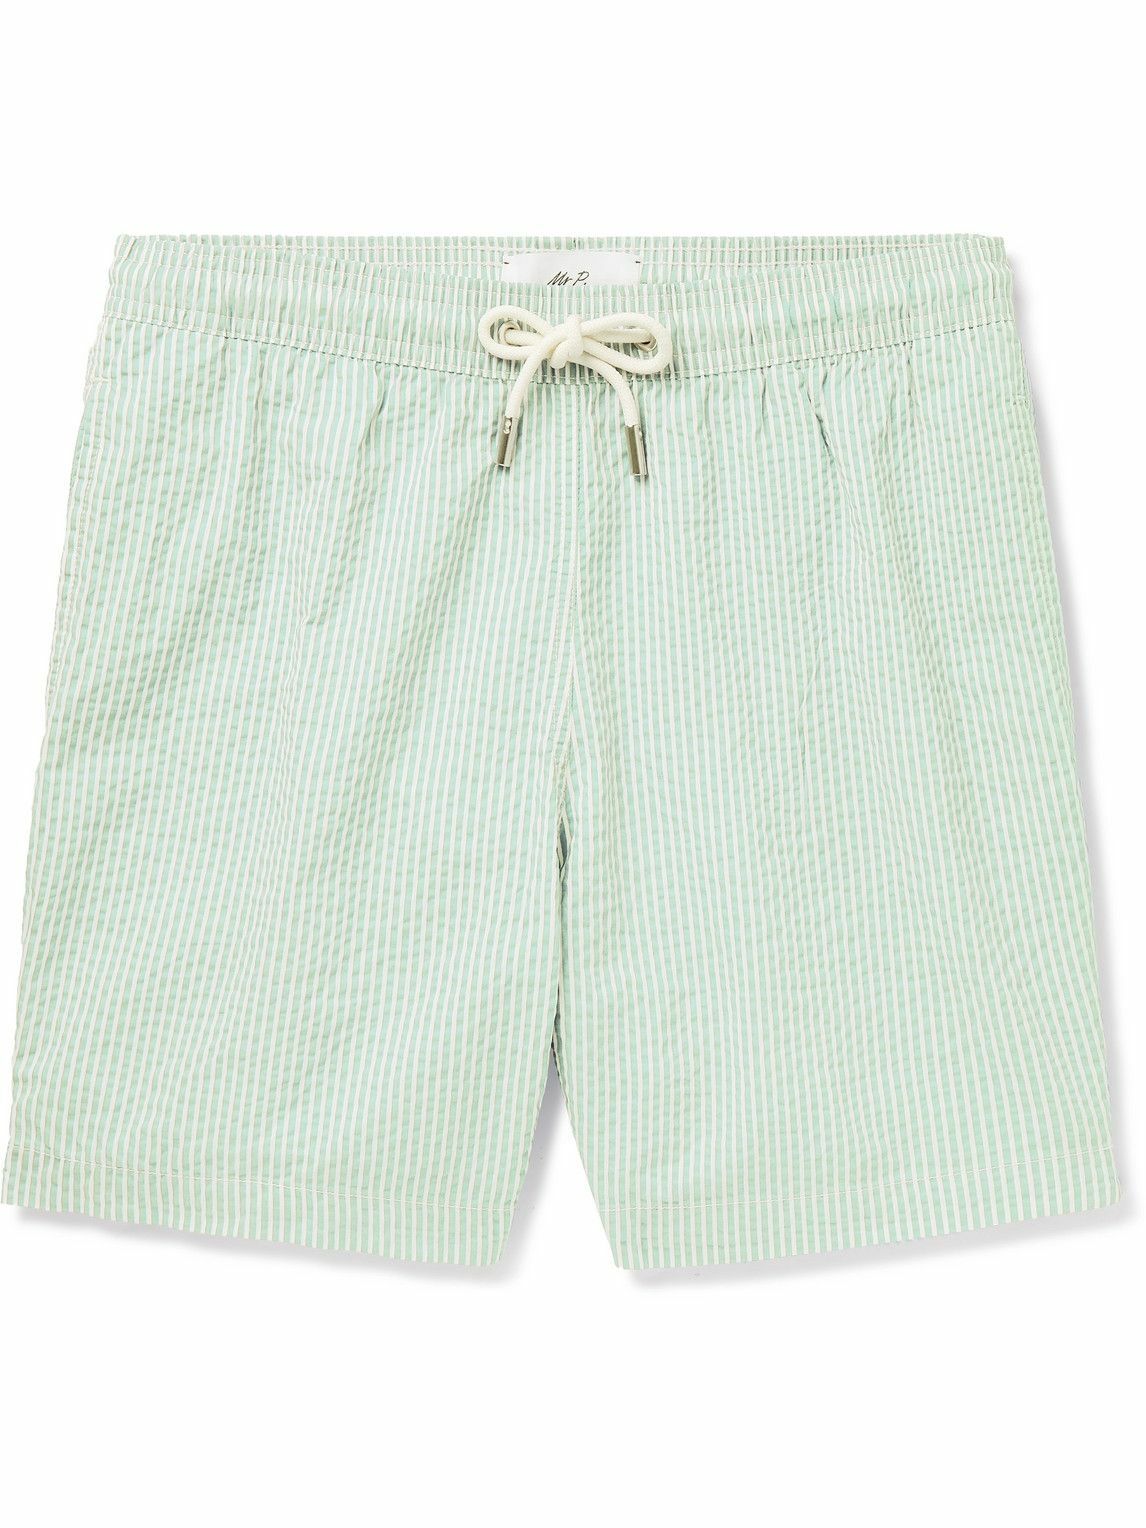 Mr P. - Striped Cotton-Blend Seersucker Swim Shorts - Green Mr P.